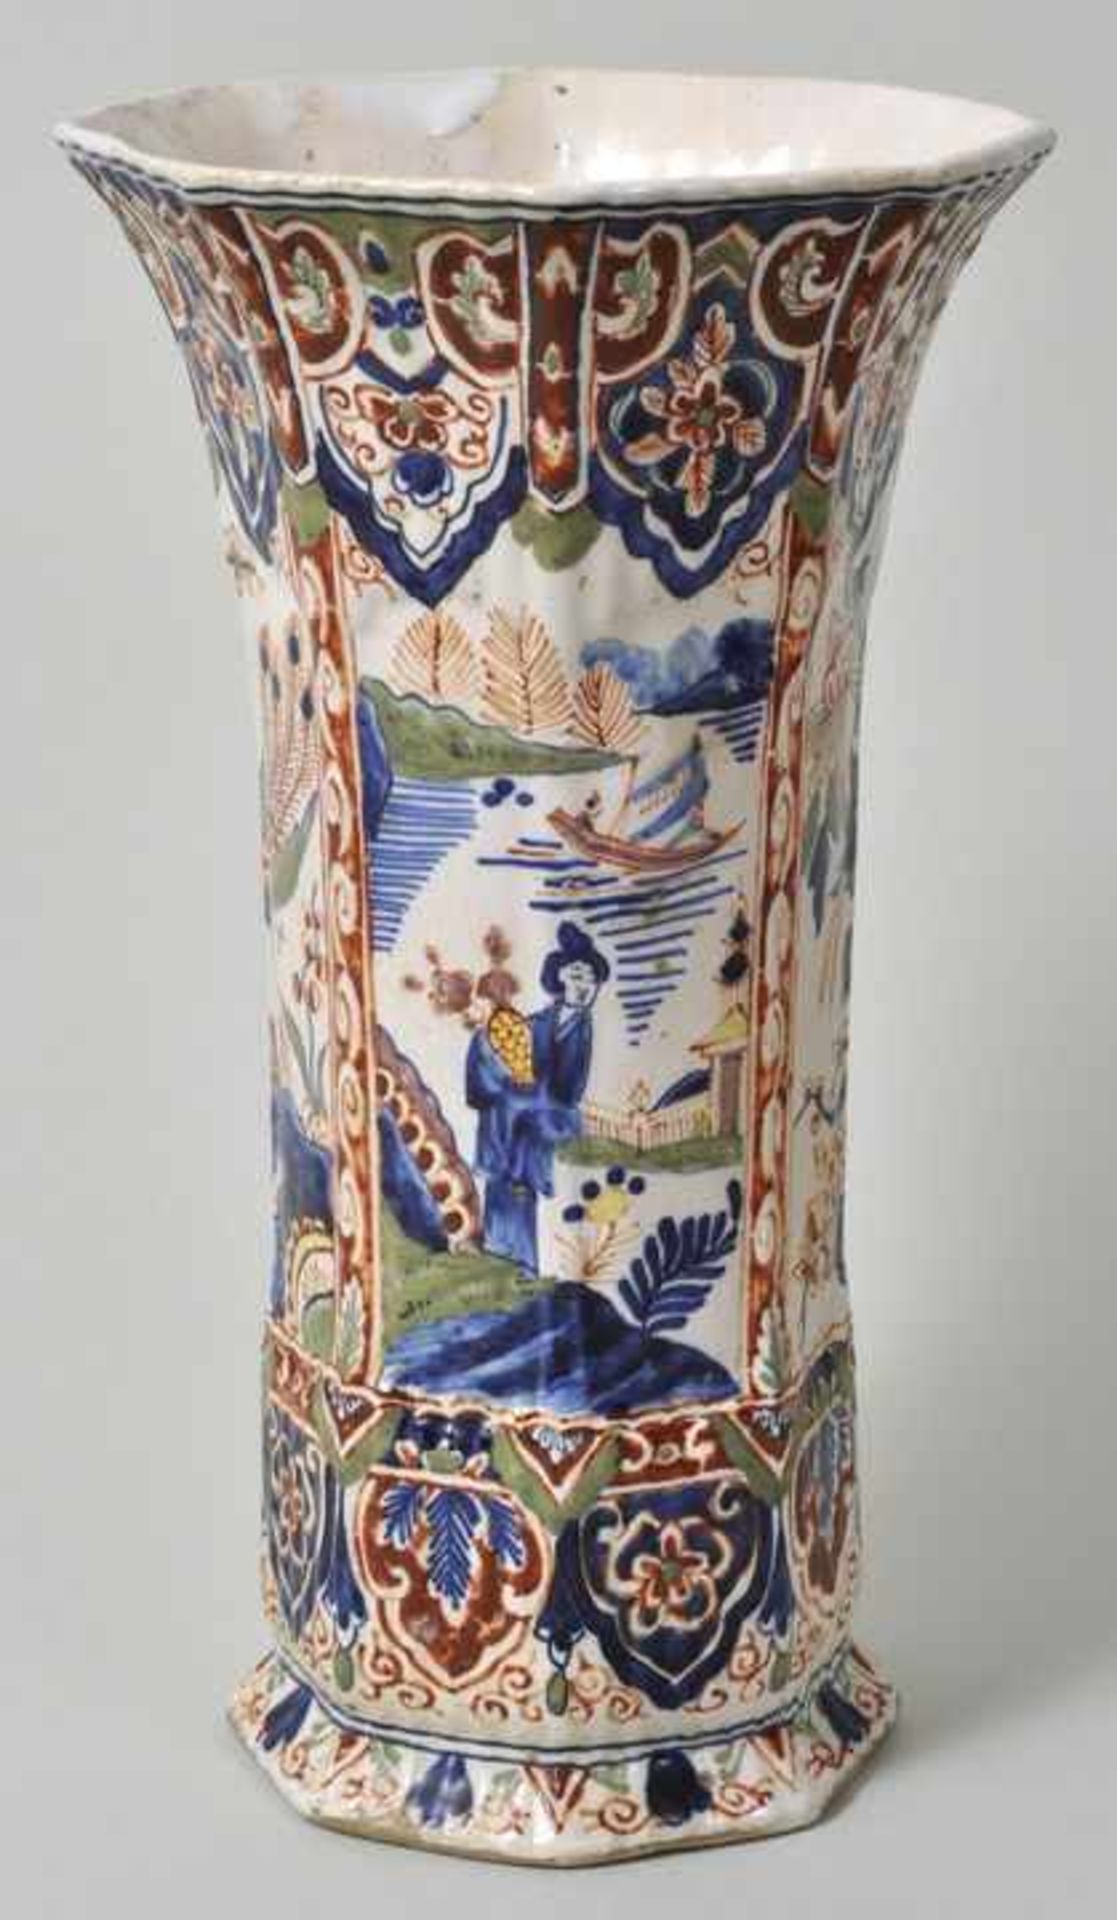 Vase, Delft, um 1700 Fayence, in Eisenrot, Grün, Gelb und Kobaltblau auf cremefarbener Glasur